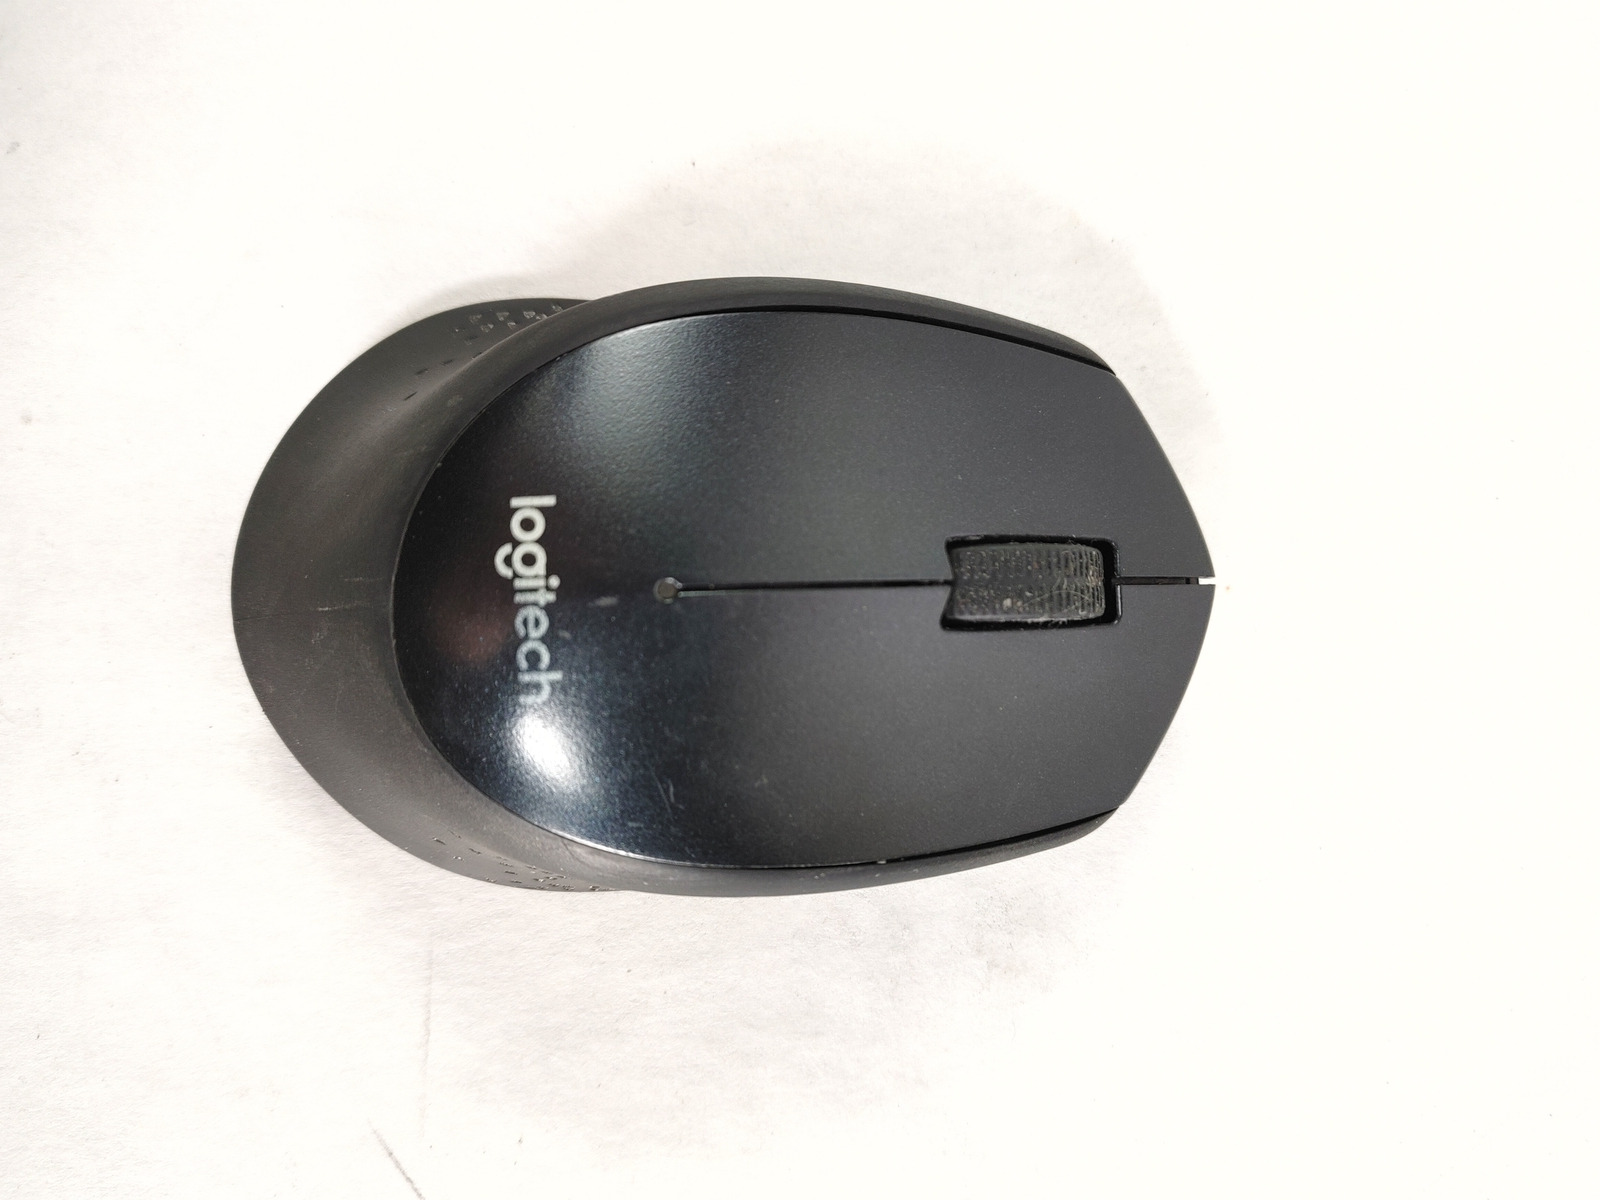 Logitech M330 SILENT USB 3 Button Standard Mouse Black